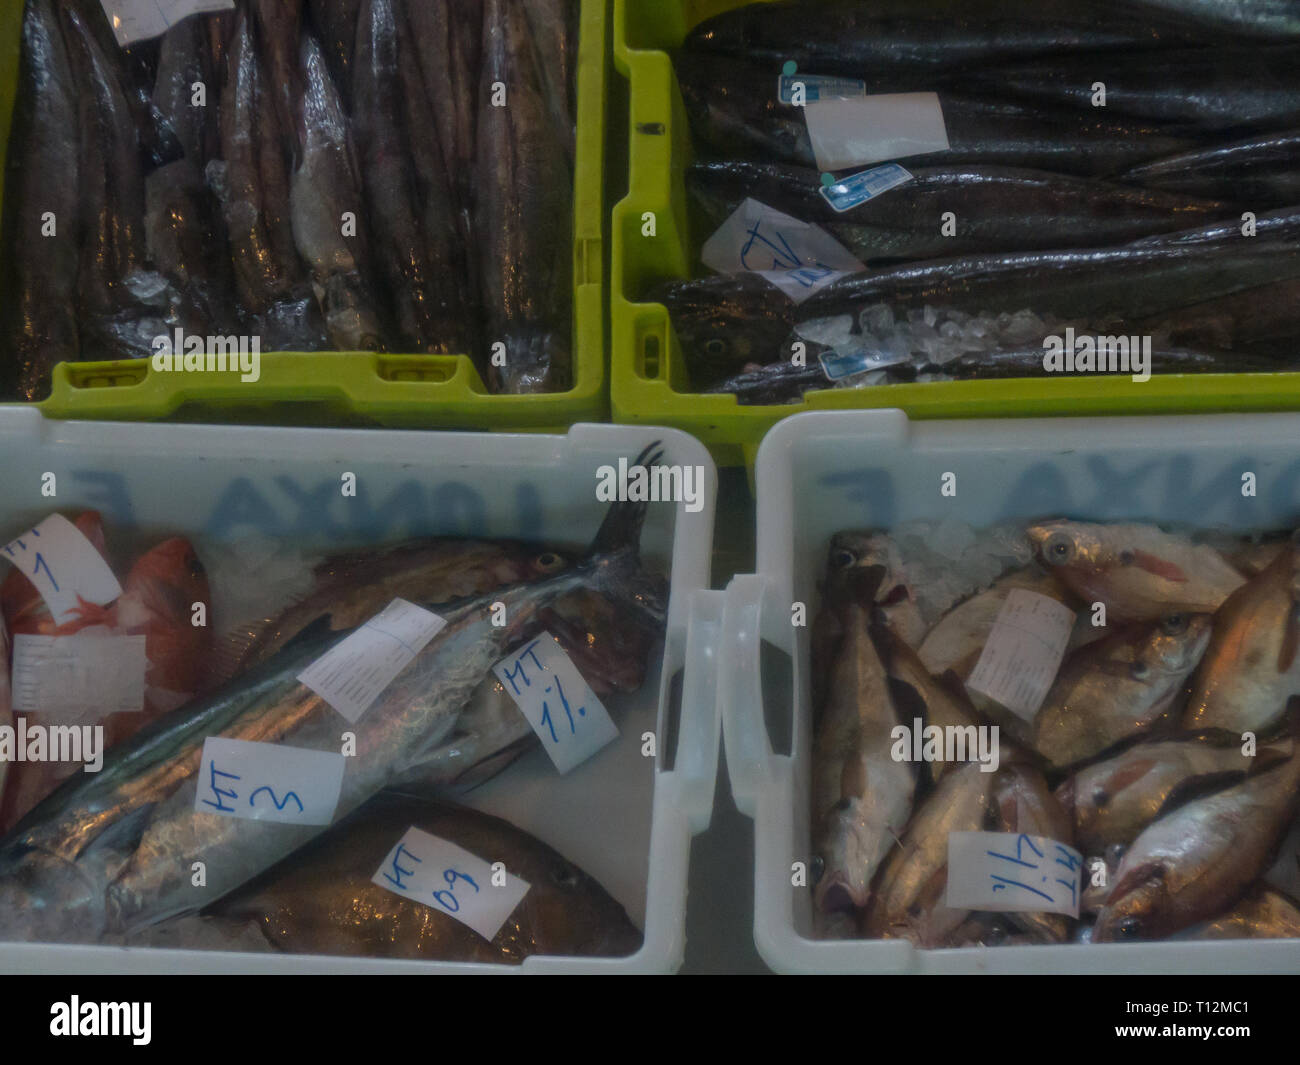 Vielfalt an Fischen in Kunststoffbehältern an einer Auktion Stockfoto